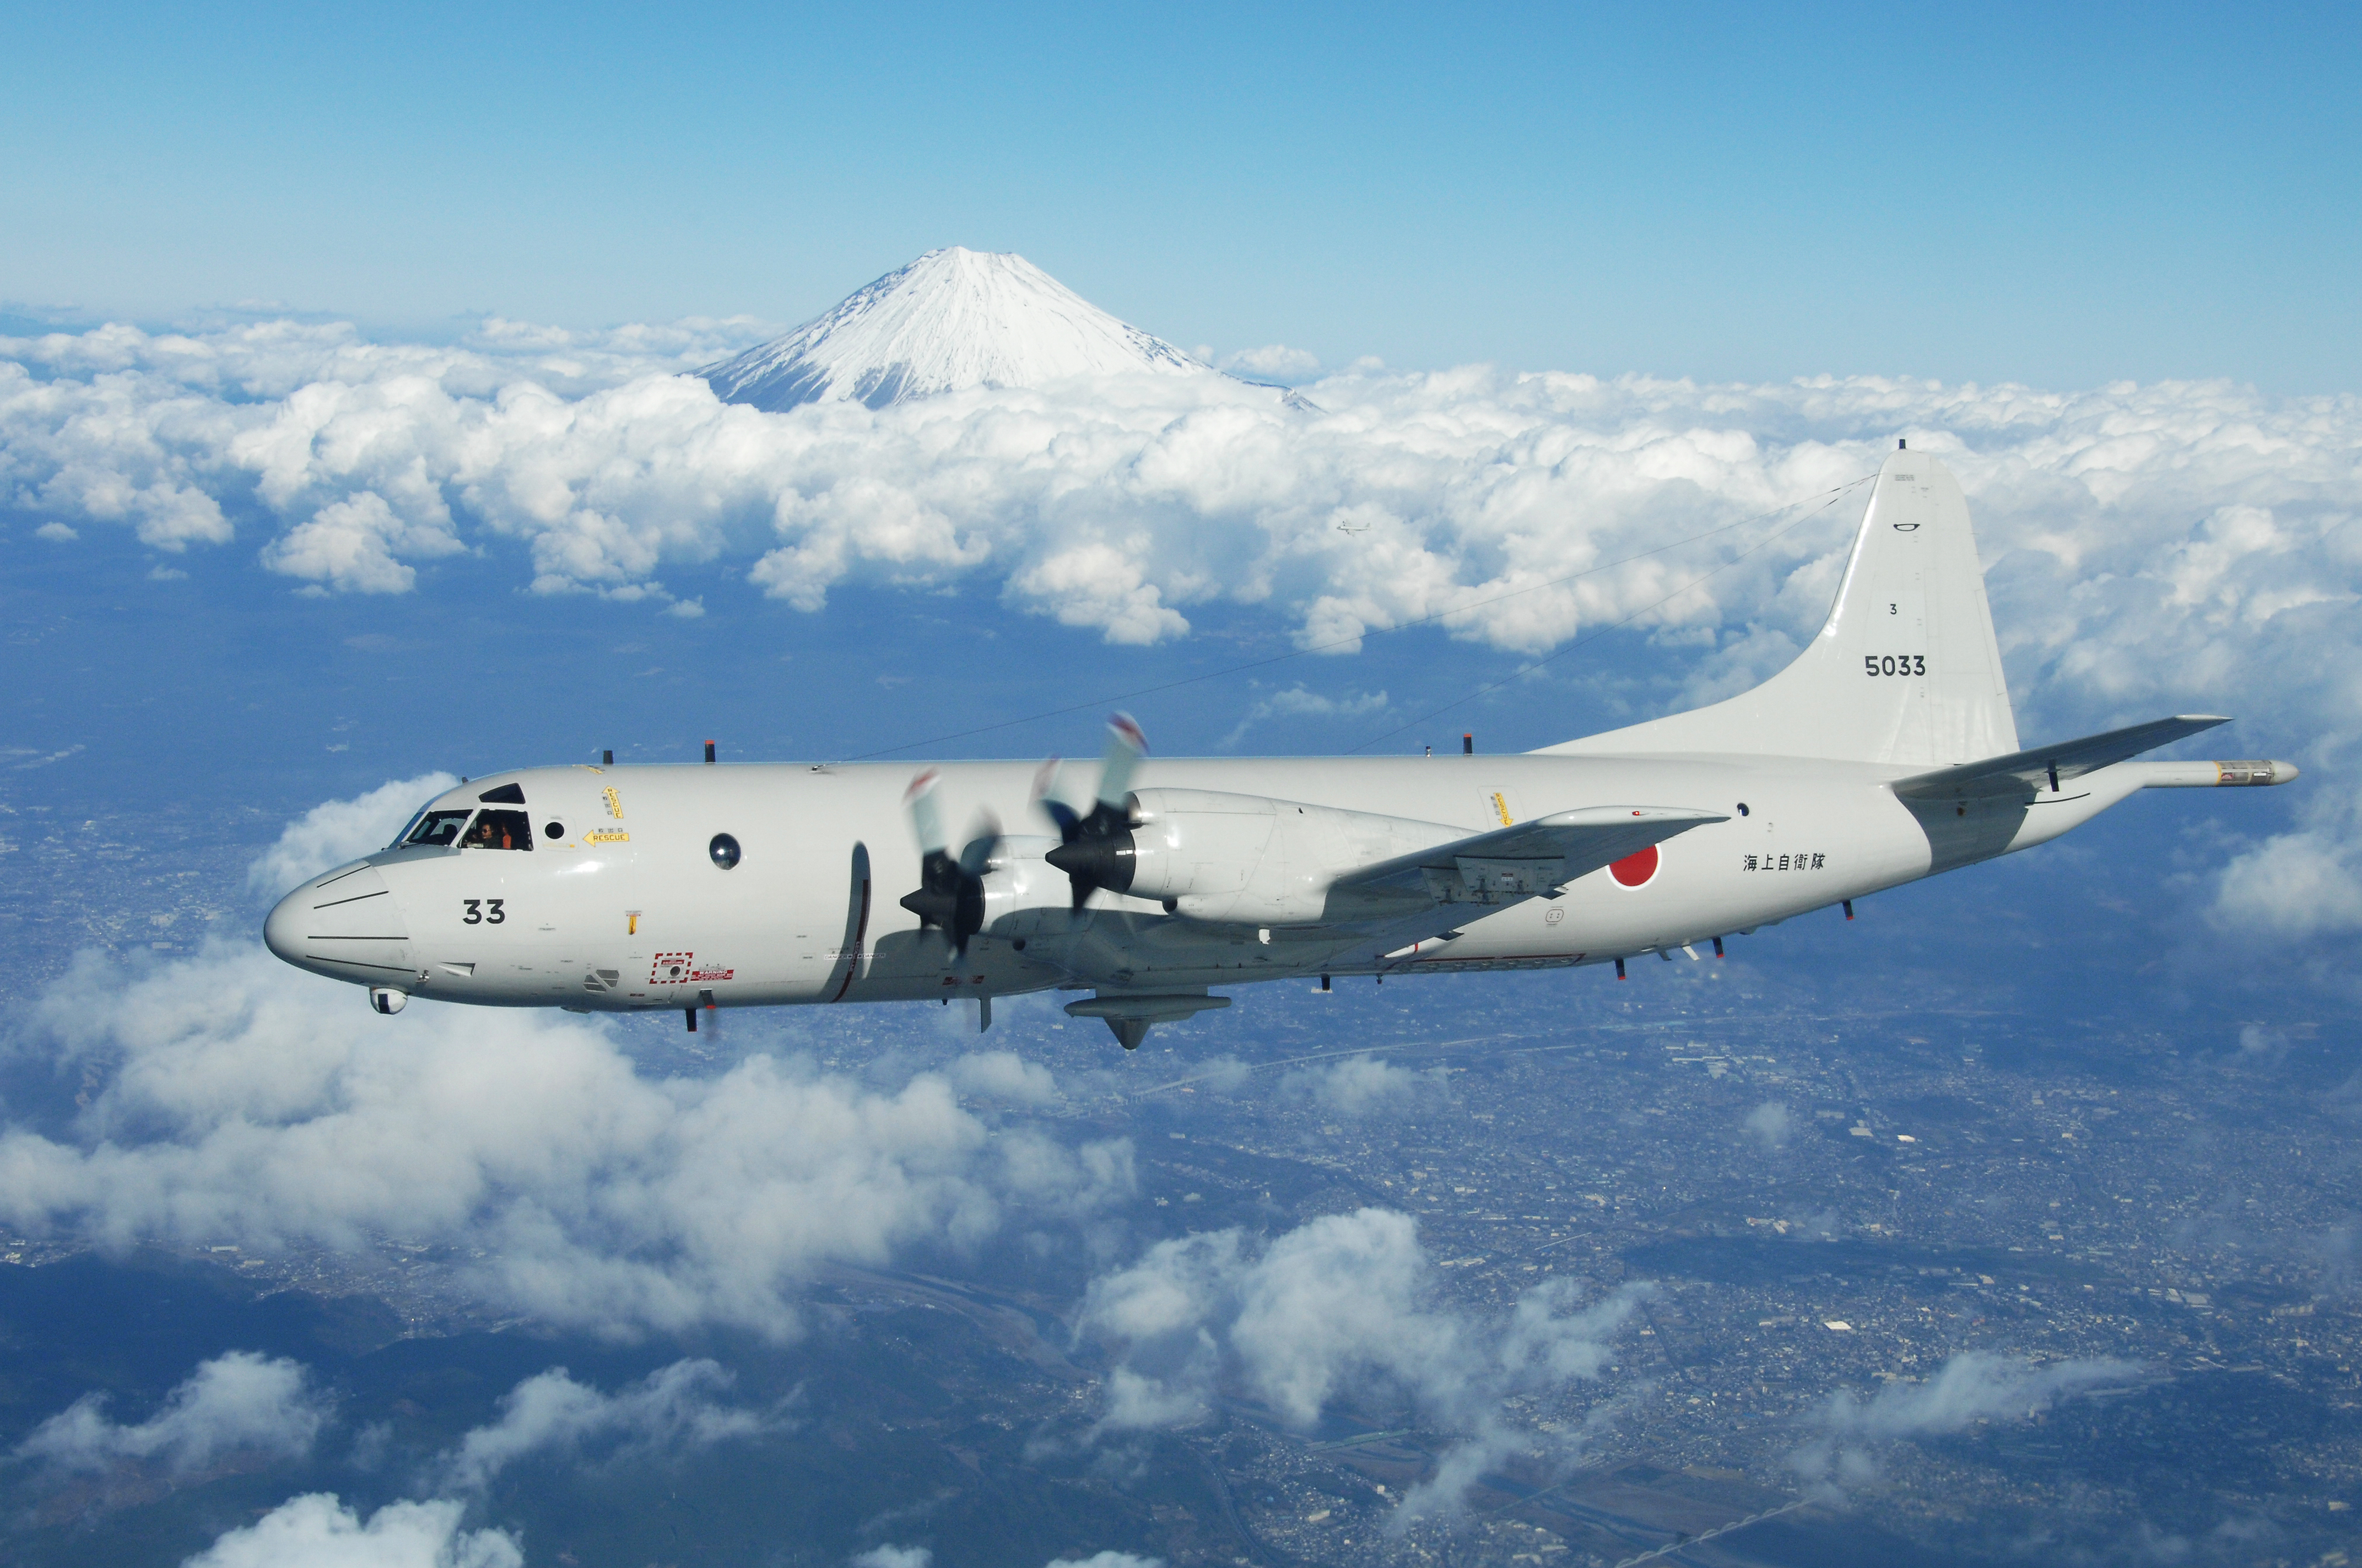 マレーシア、日本に対潜哨戒機P-3Cの供与を要請 | TOKYO EXPRESS